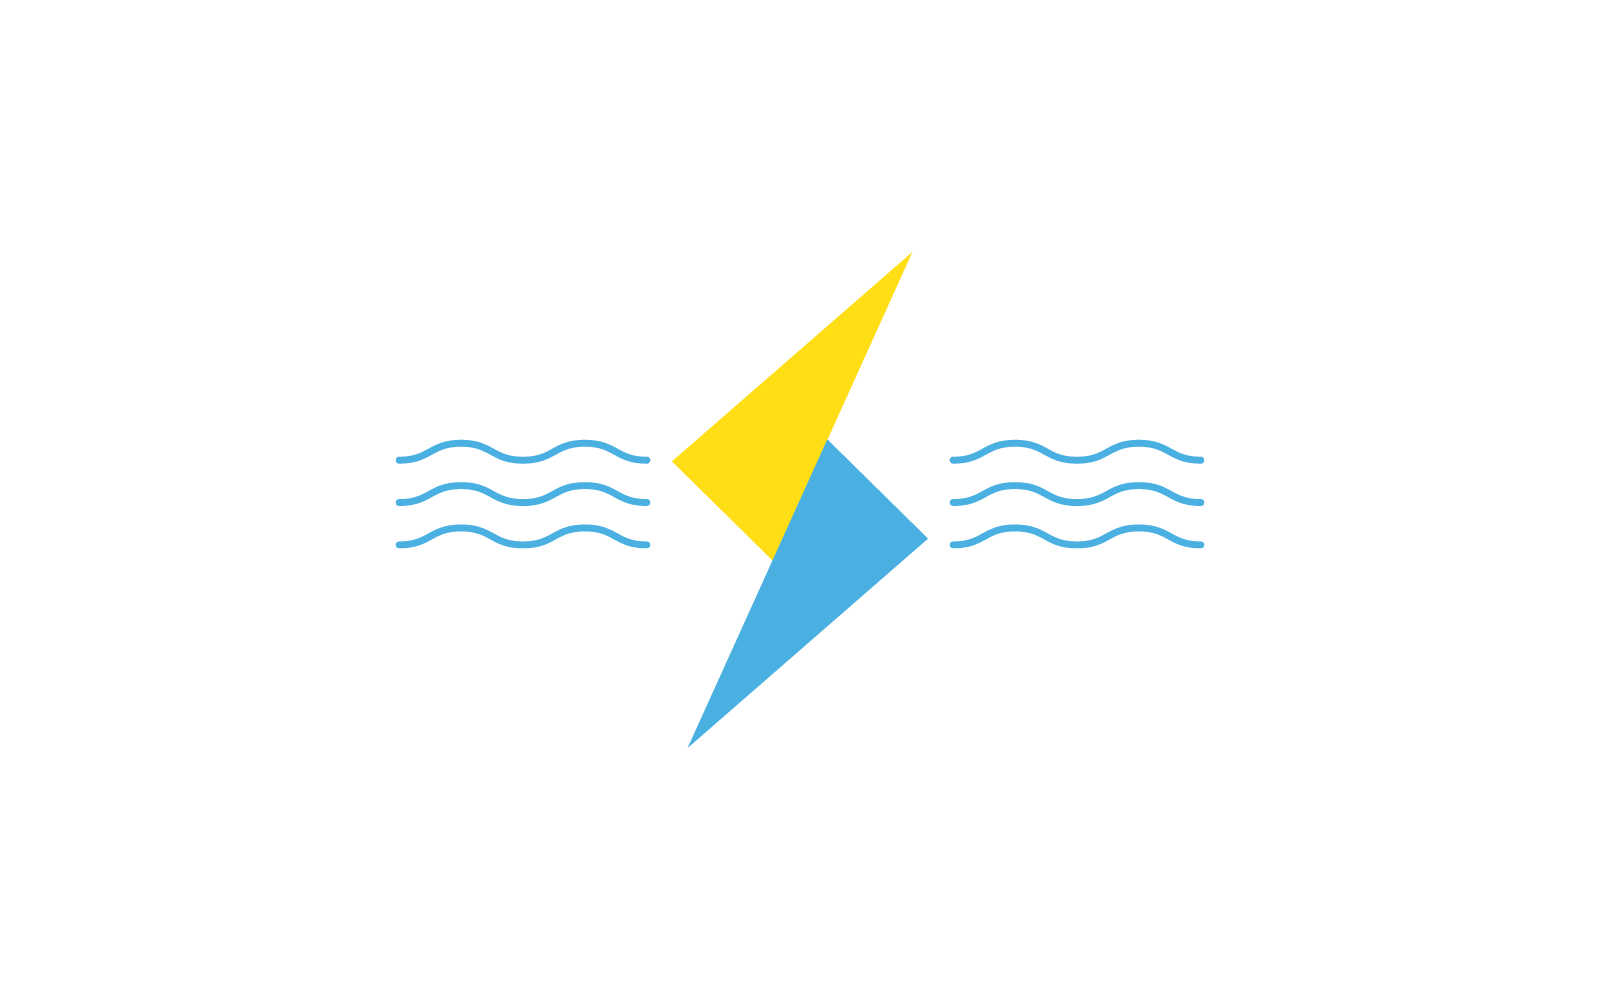 Power lightning power energy logo vector illustration flat design Logo Template